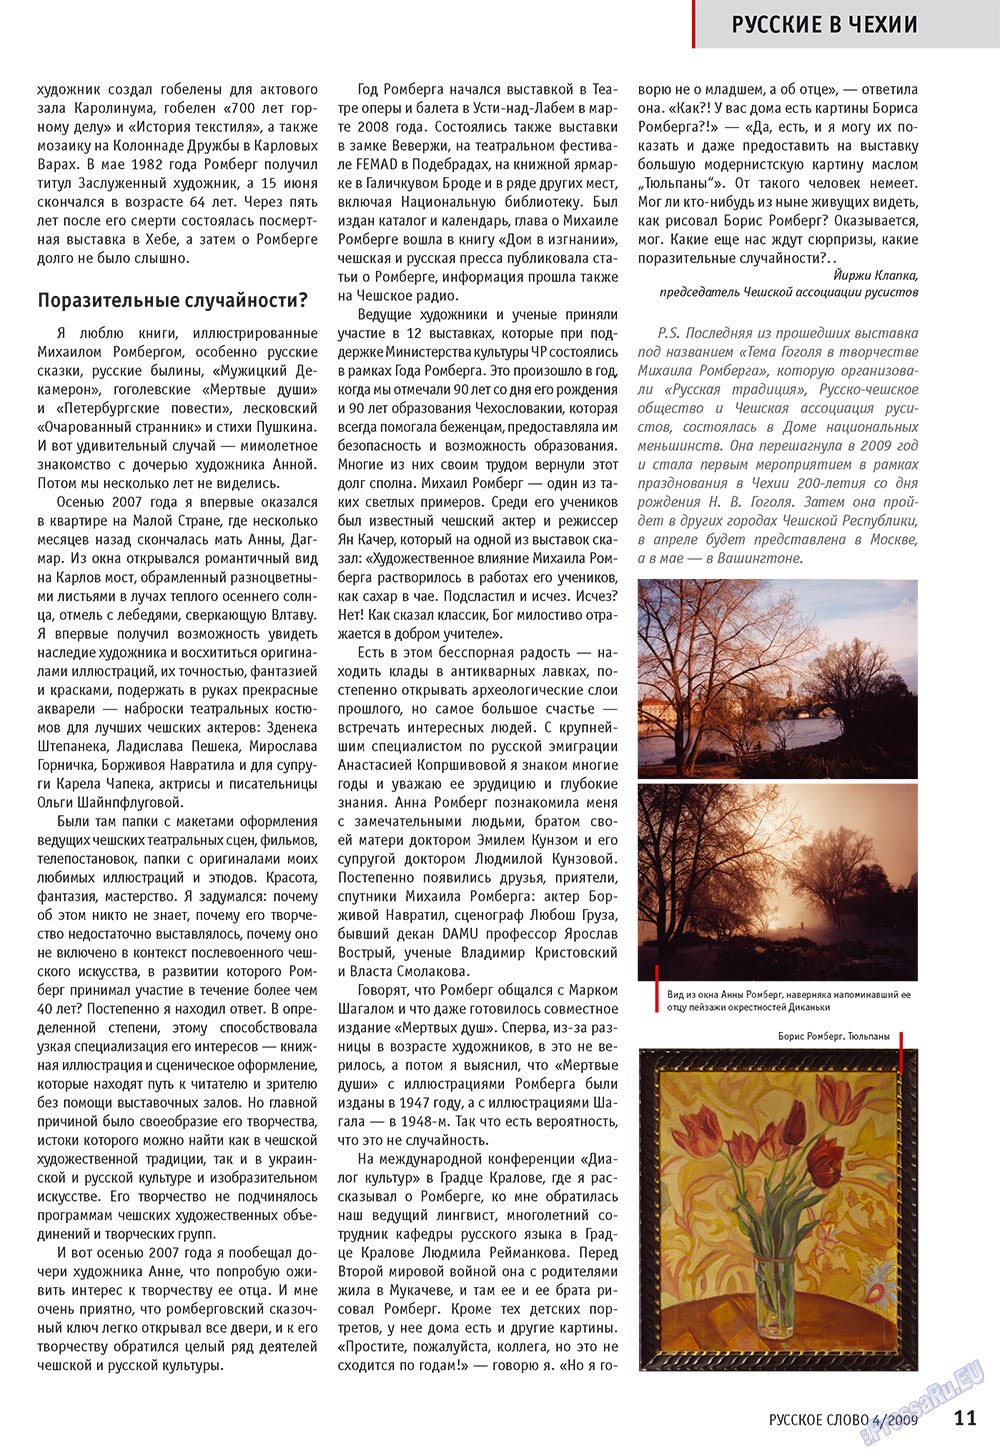 Русское слово (журнал). 2009 год, номер 4, стр. 13